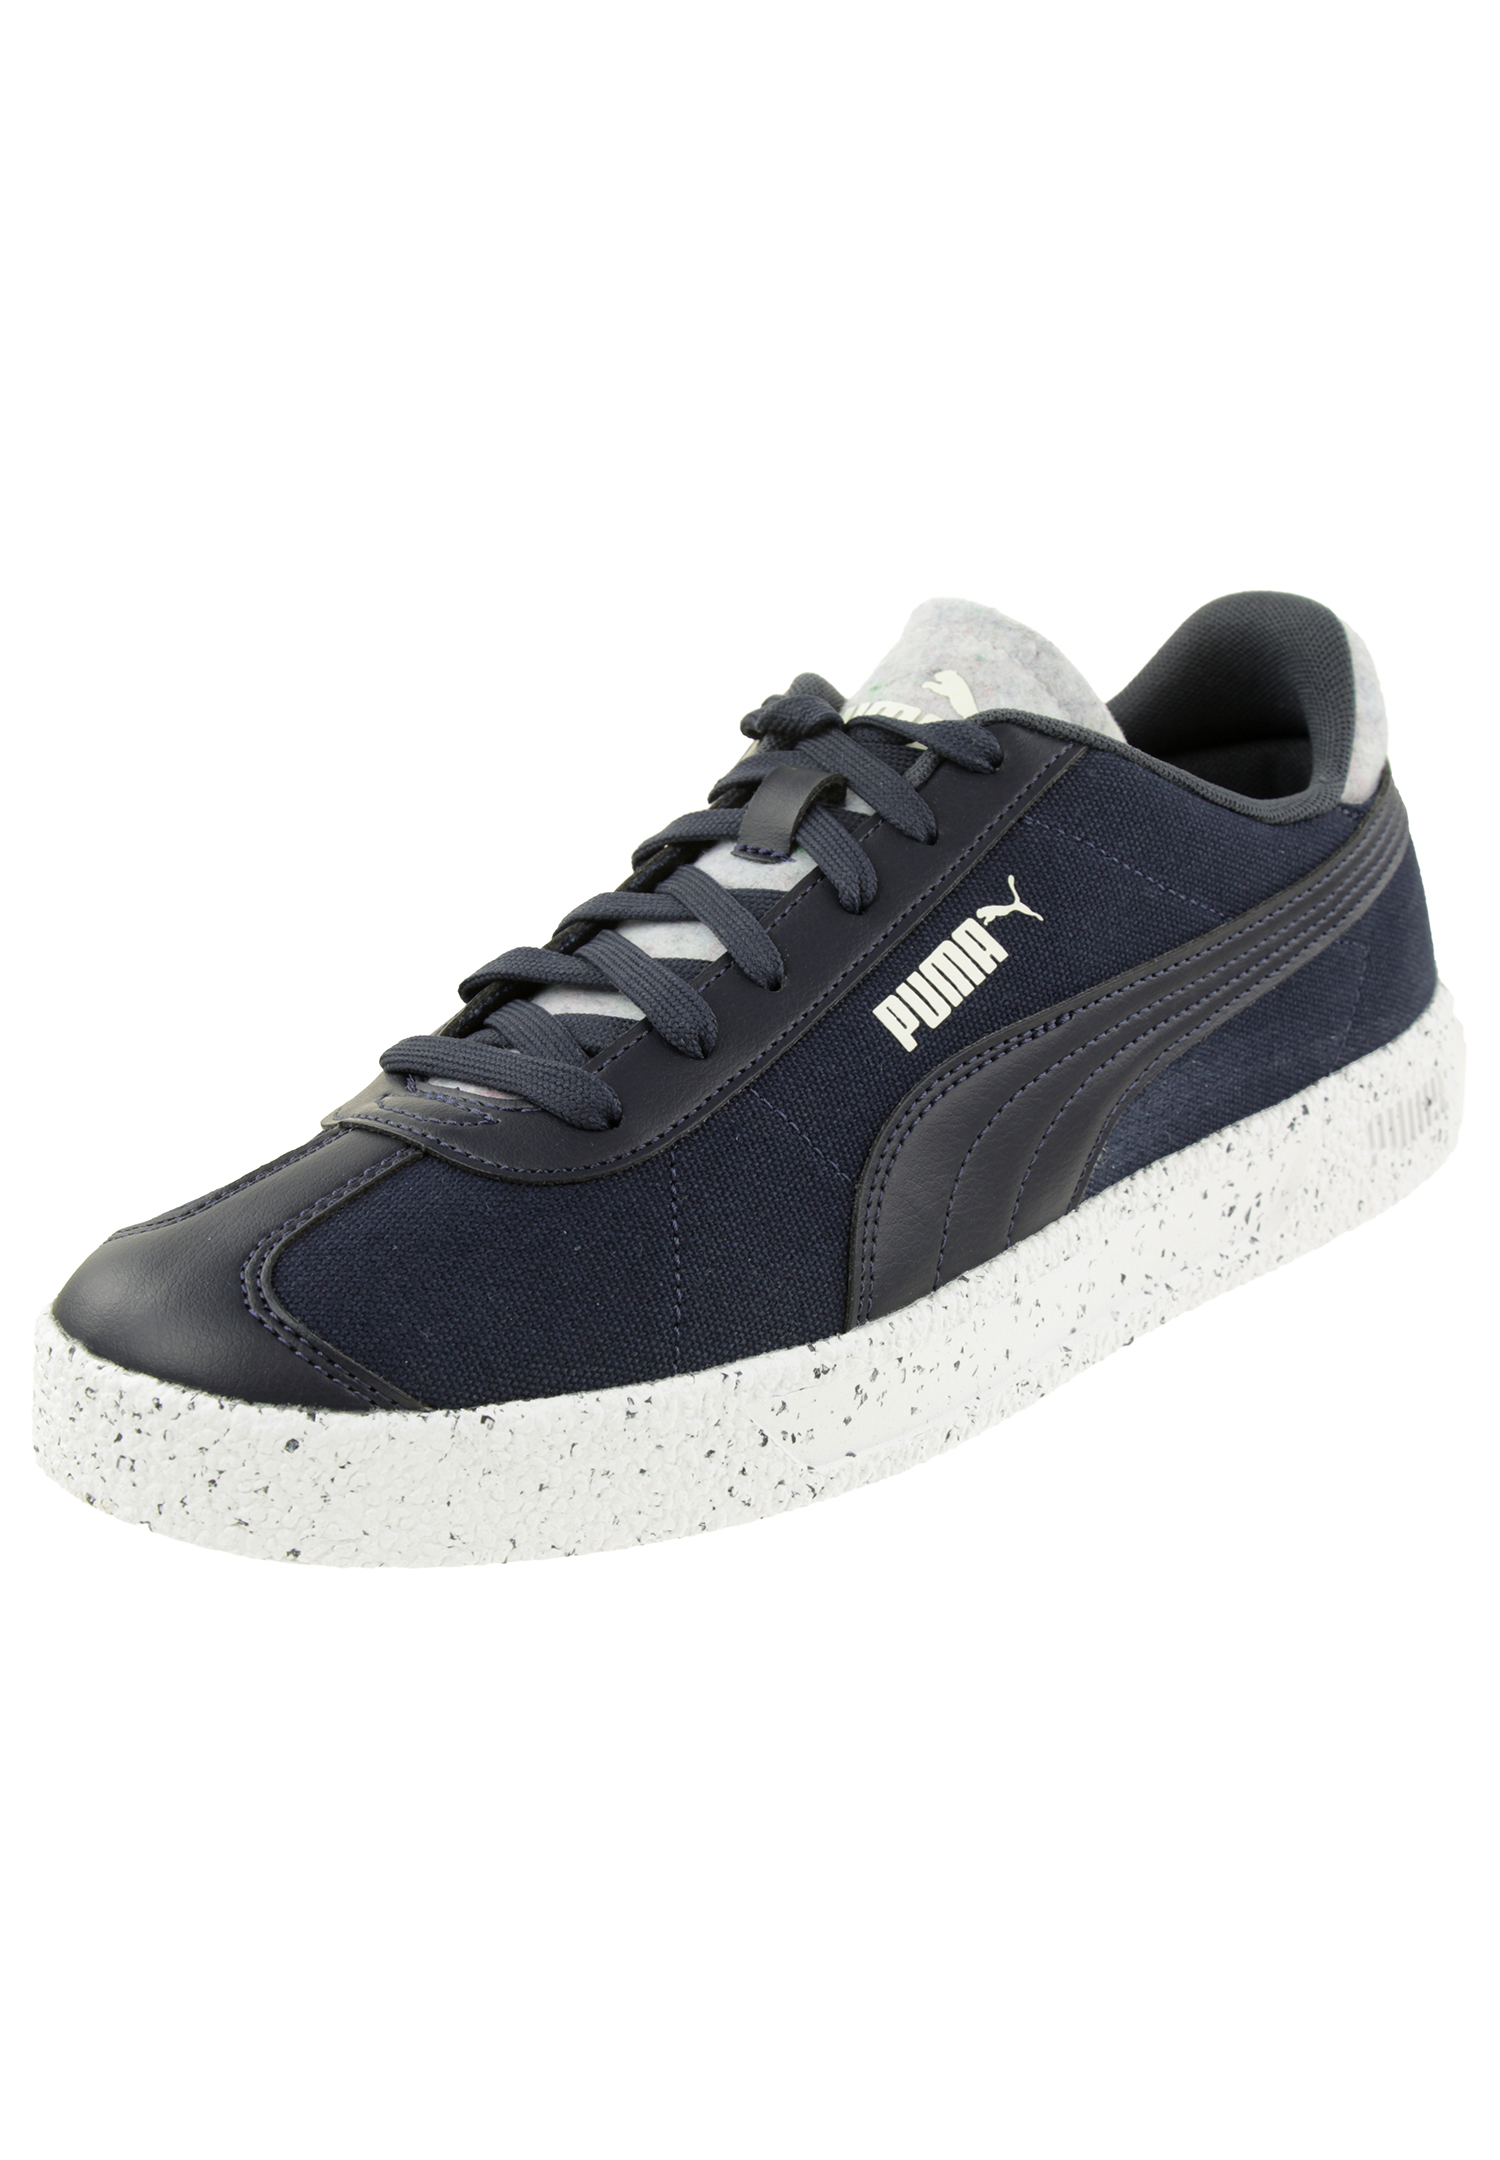 Puma CLUB BETTER Unisex Sneaker 386660 02 Nachhaltiger Schuh aus regenerierten Material blau